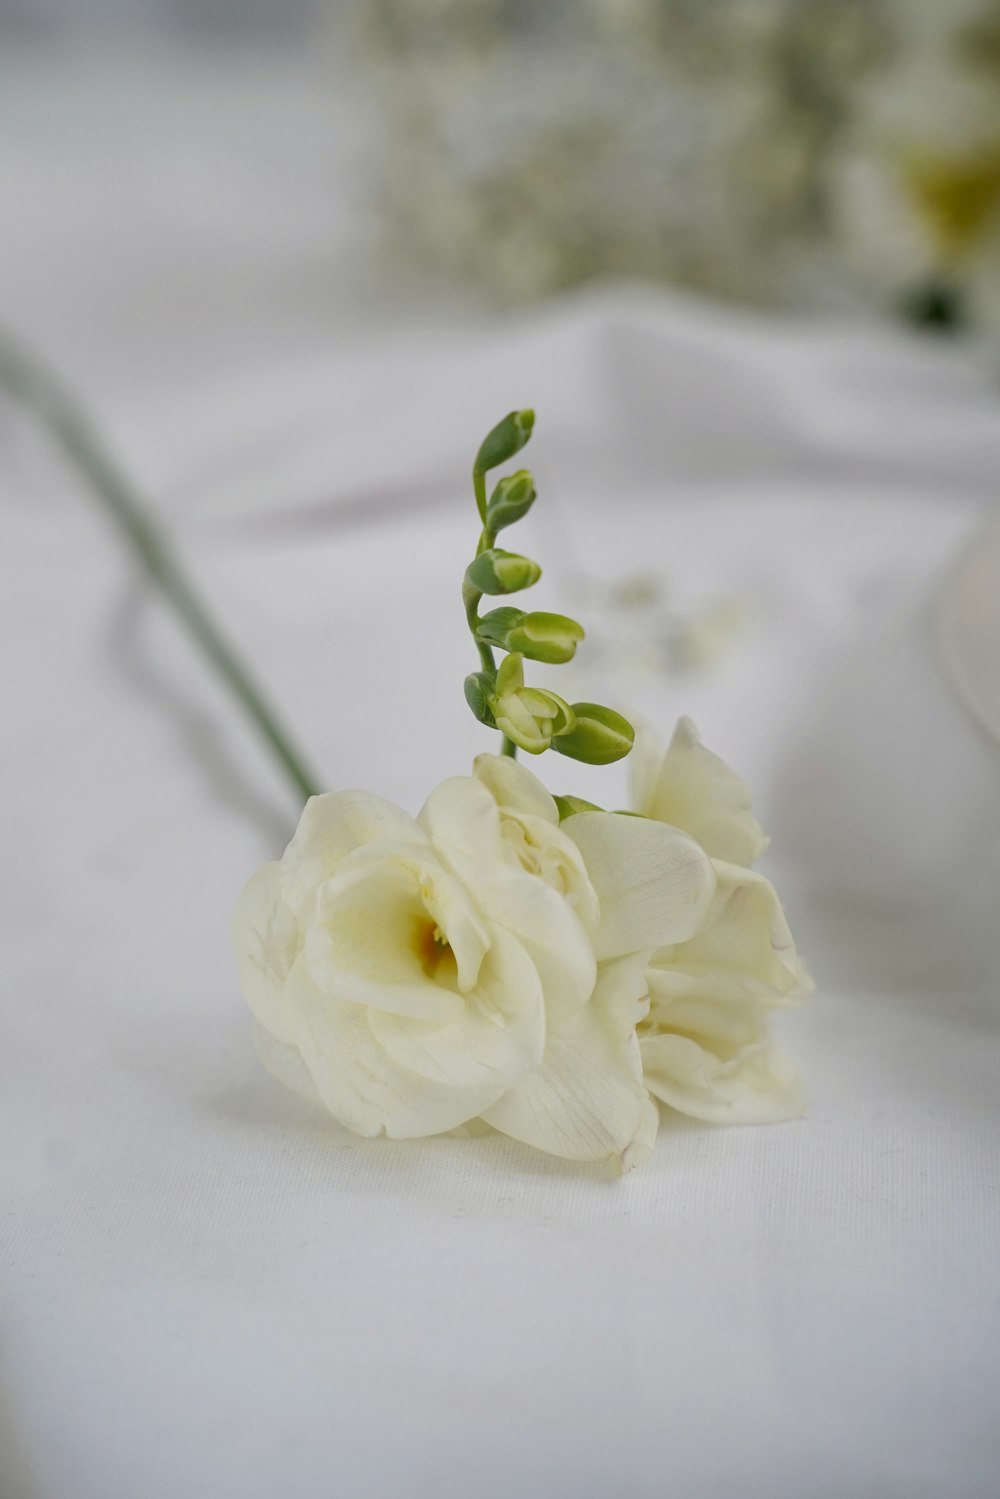 white rose on white textile